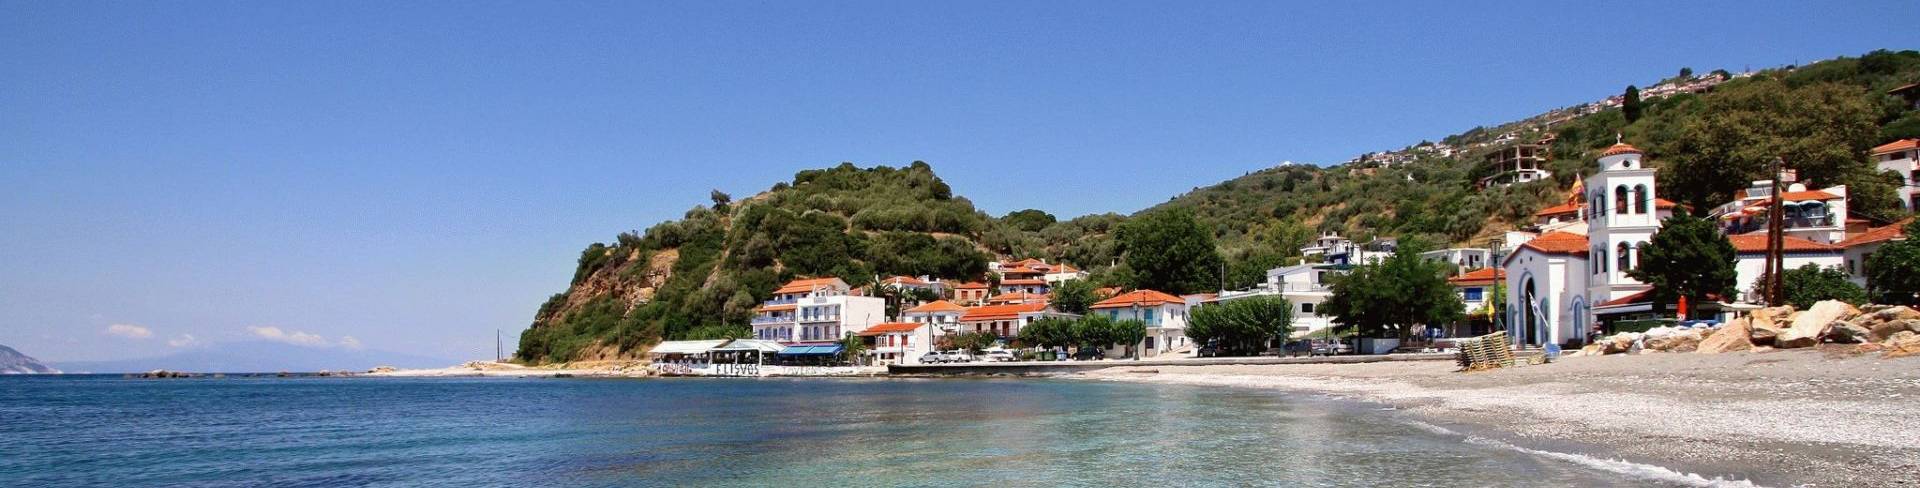 Лутраки - пляжный курорт в Греции